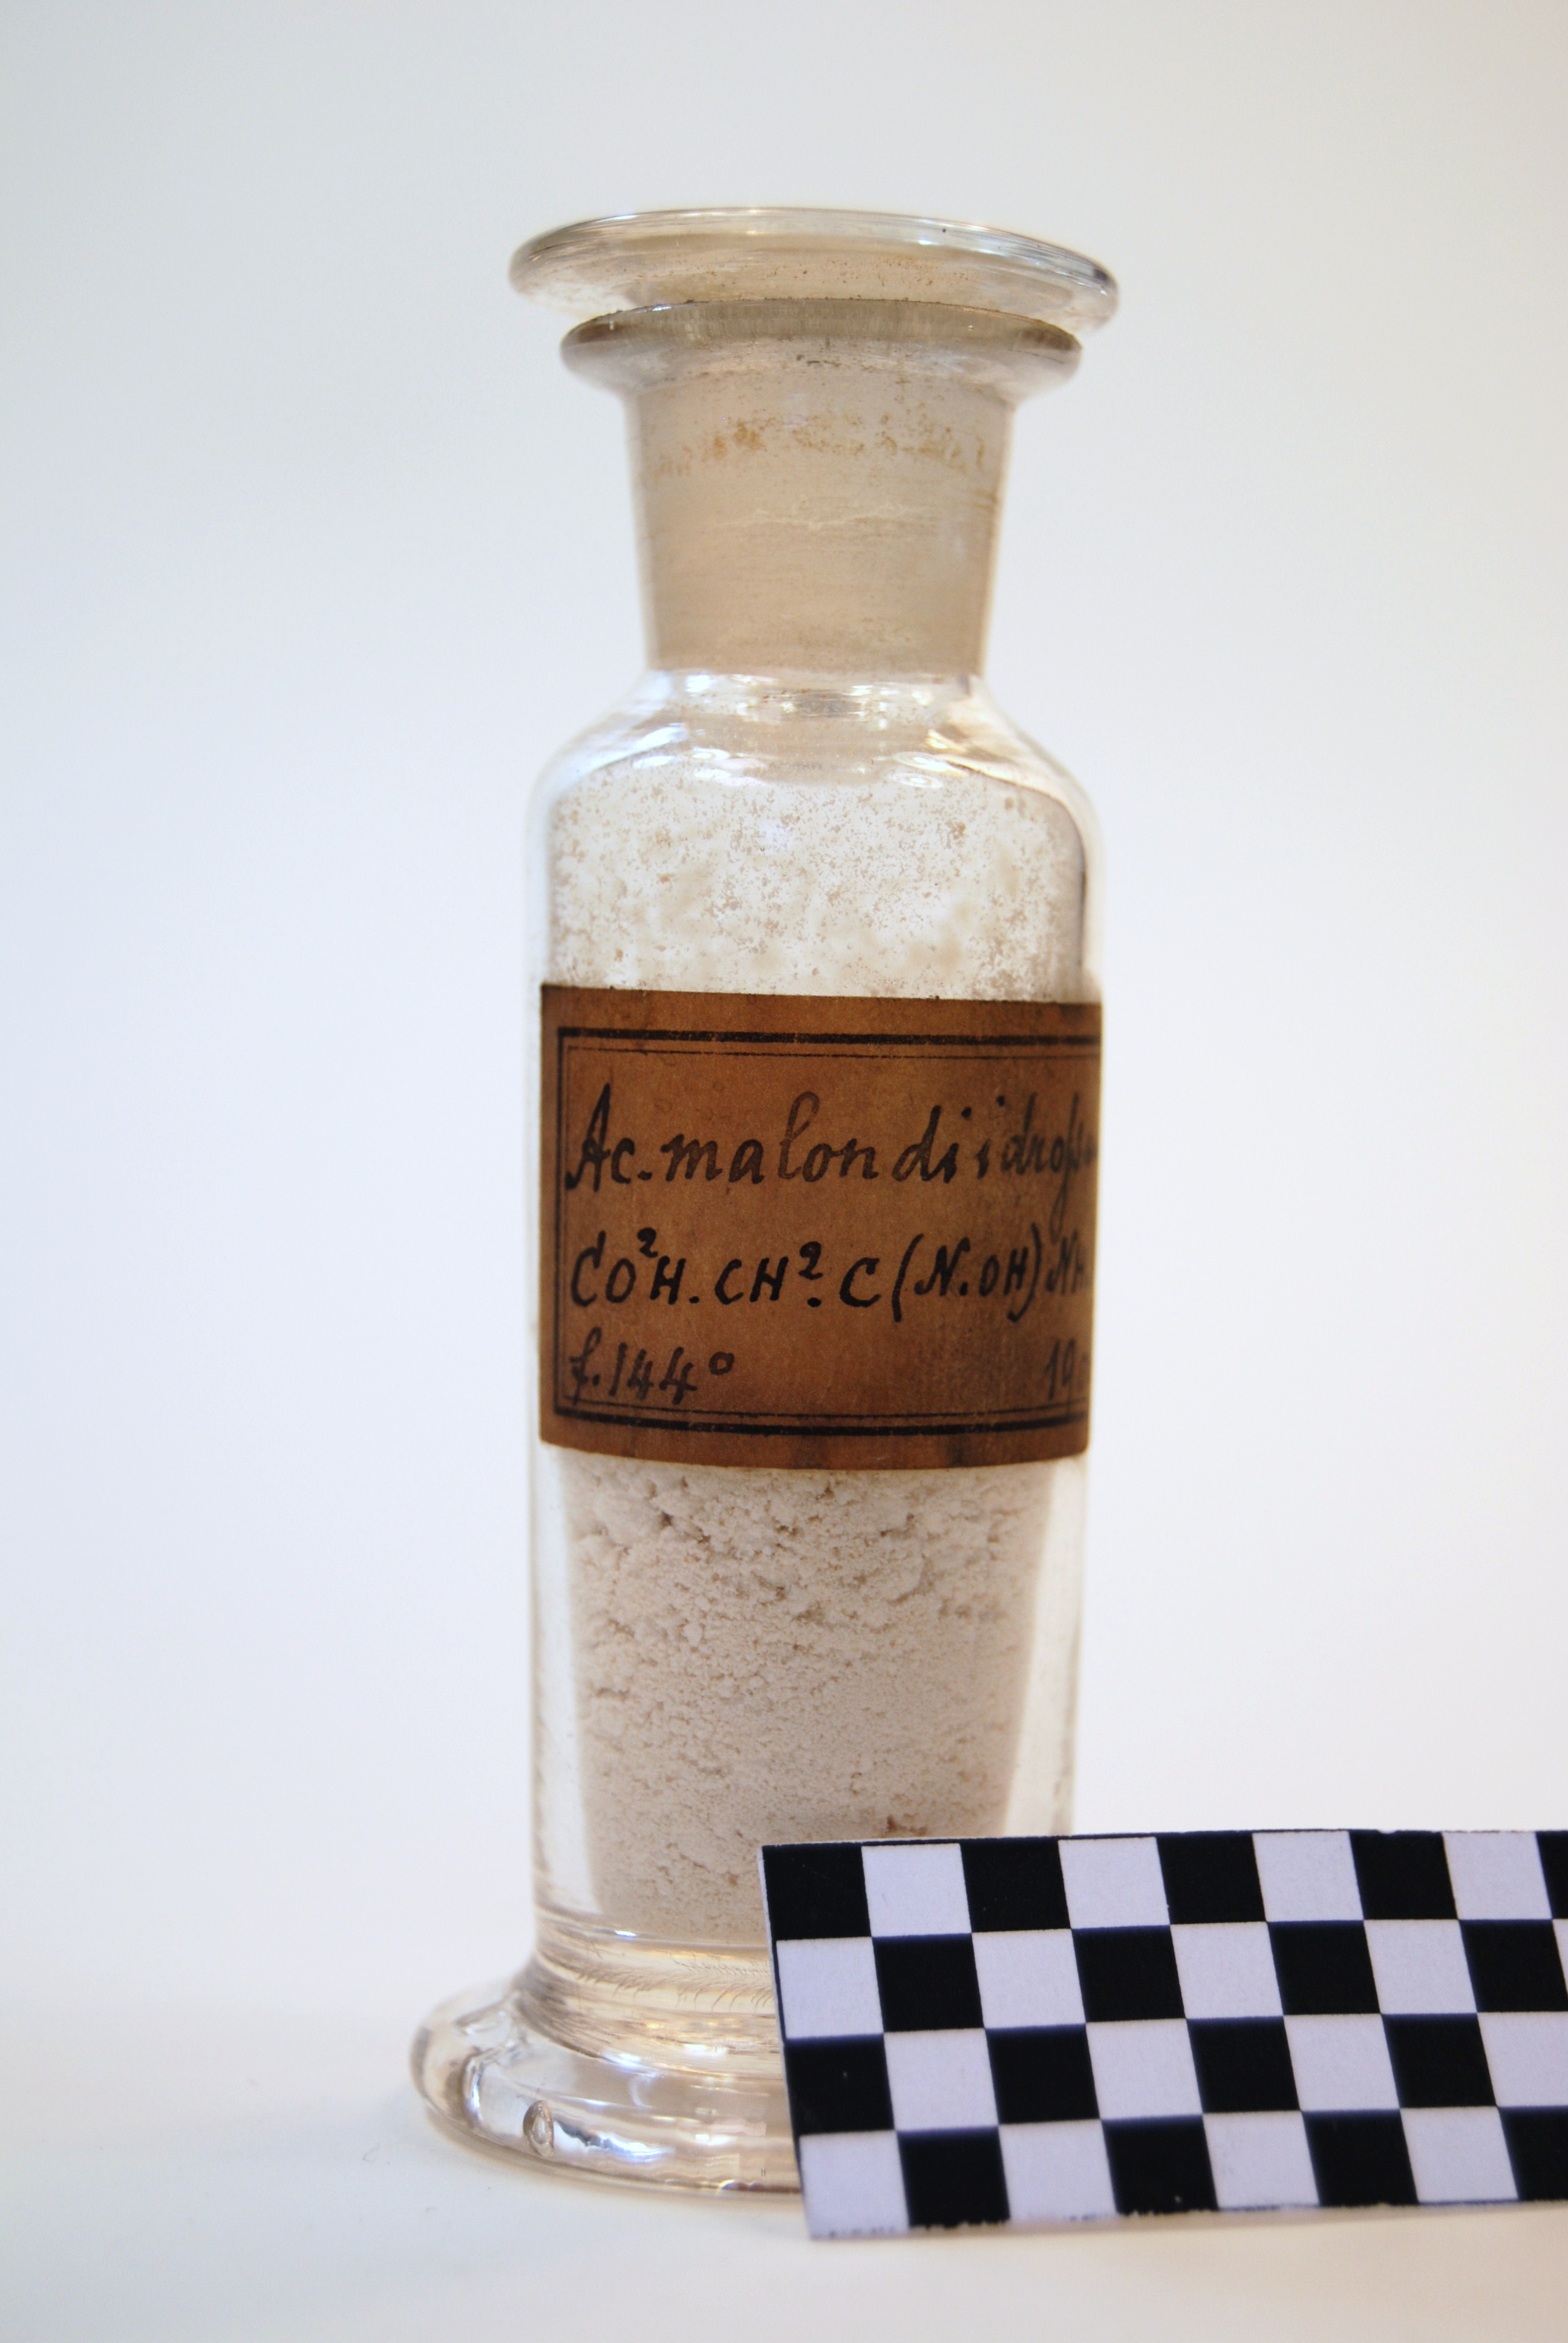 acido malon diidrossamico (prodotto chimico, di sintesi) di Ugo Schiff (laboratorio) - scuola chimica fiorentina (metà/ inizio XIX/ XX)